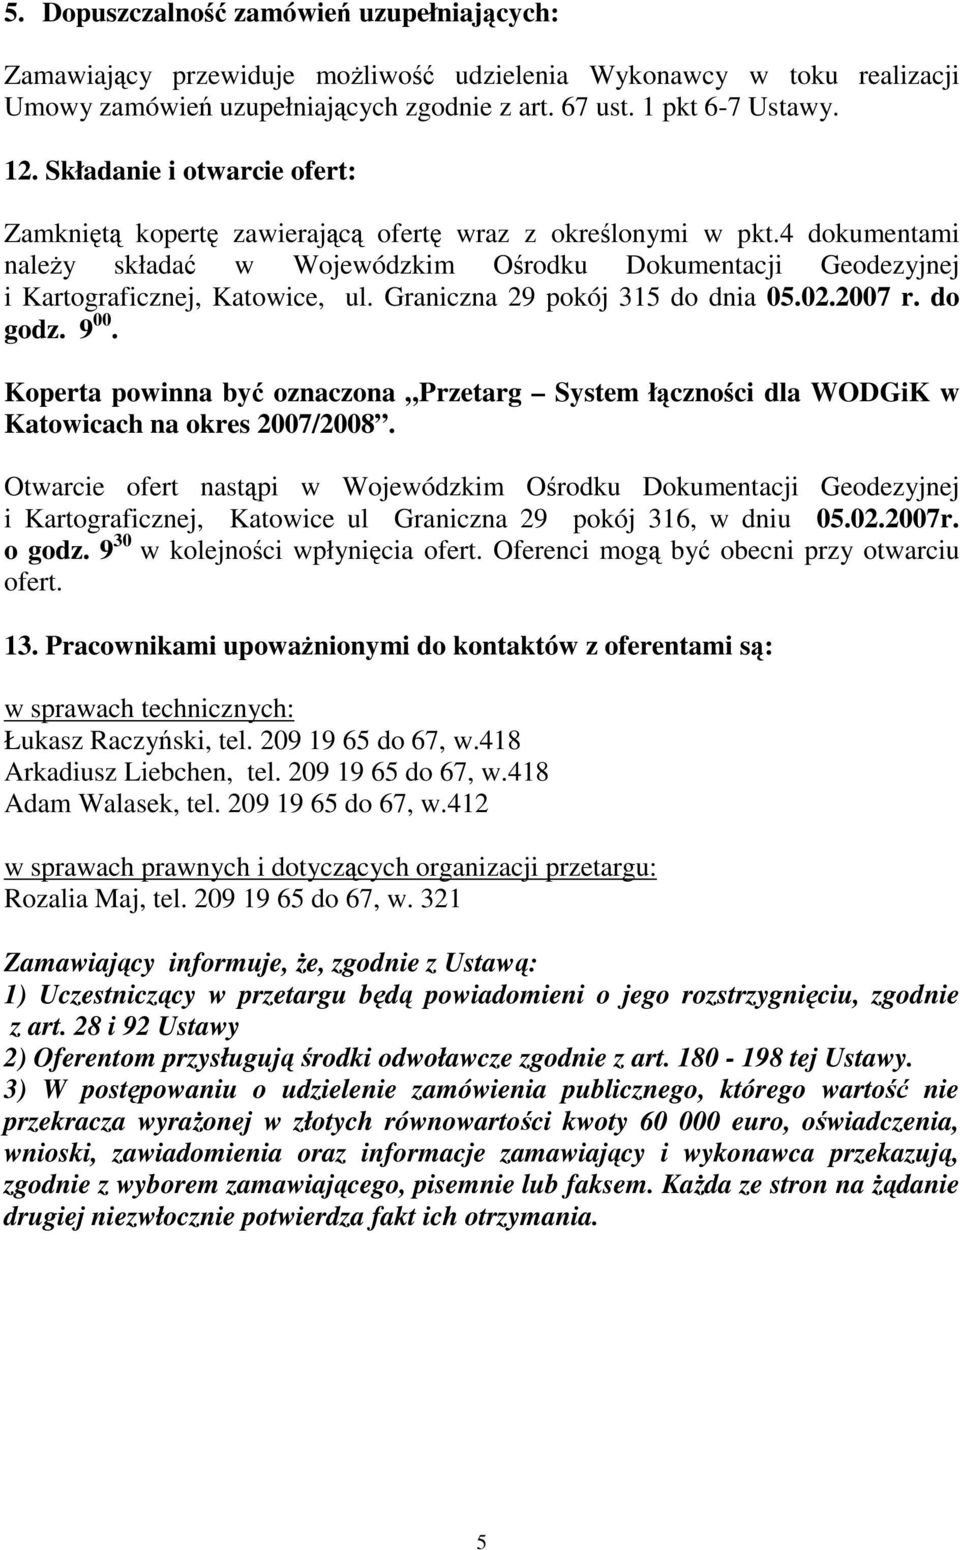 Graniczna 29 pokój 315 do dnia 05.02.2007 r. do godz. 9 00. Koperta powinna by oznaczona Przetarg System łcznoci dla WODGiK w Katowicach na okres 2007/2008.